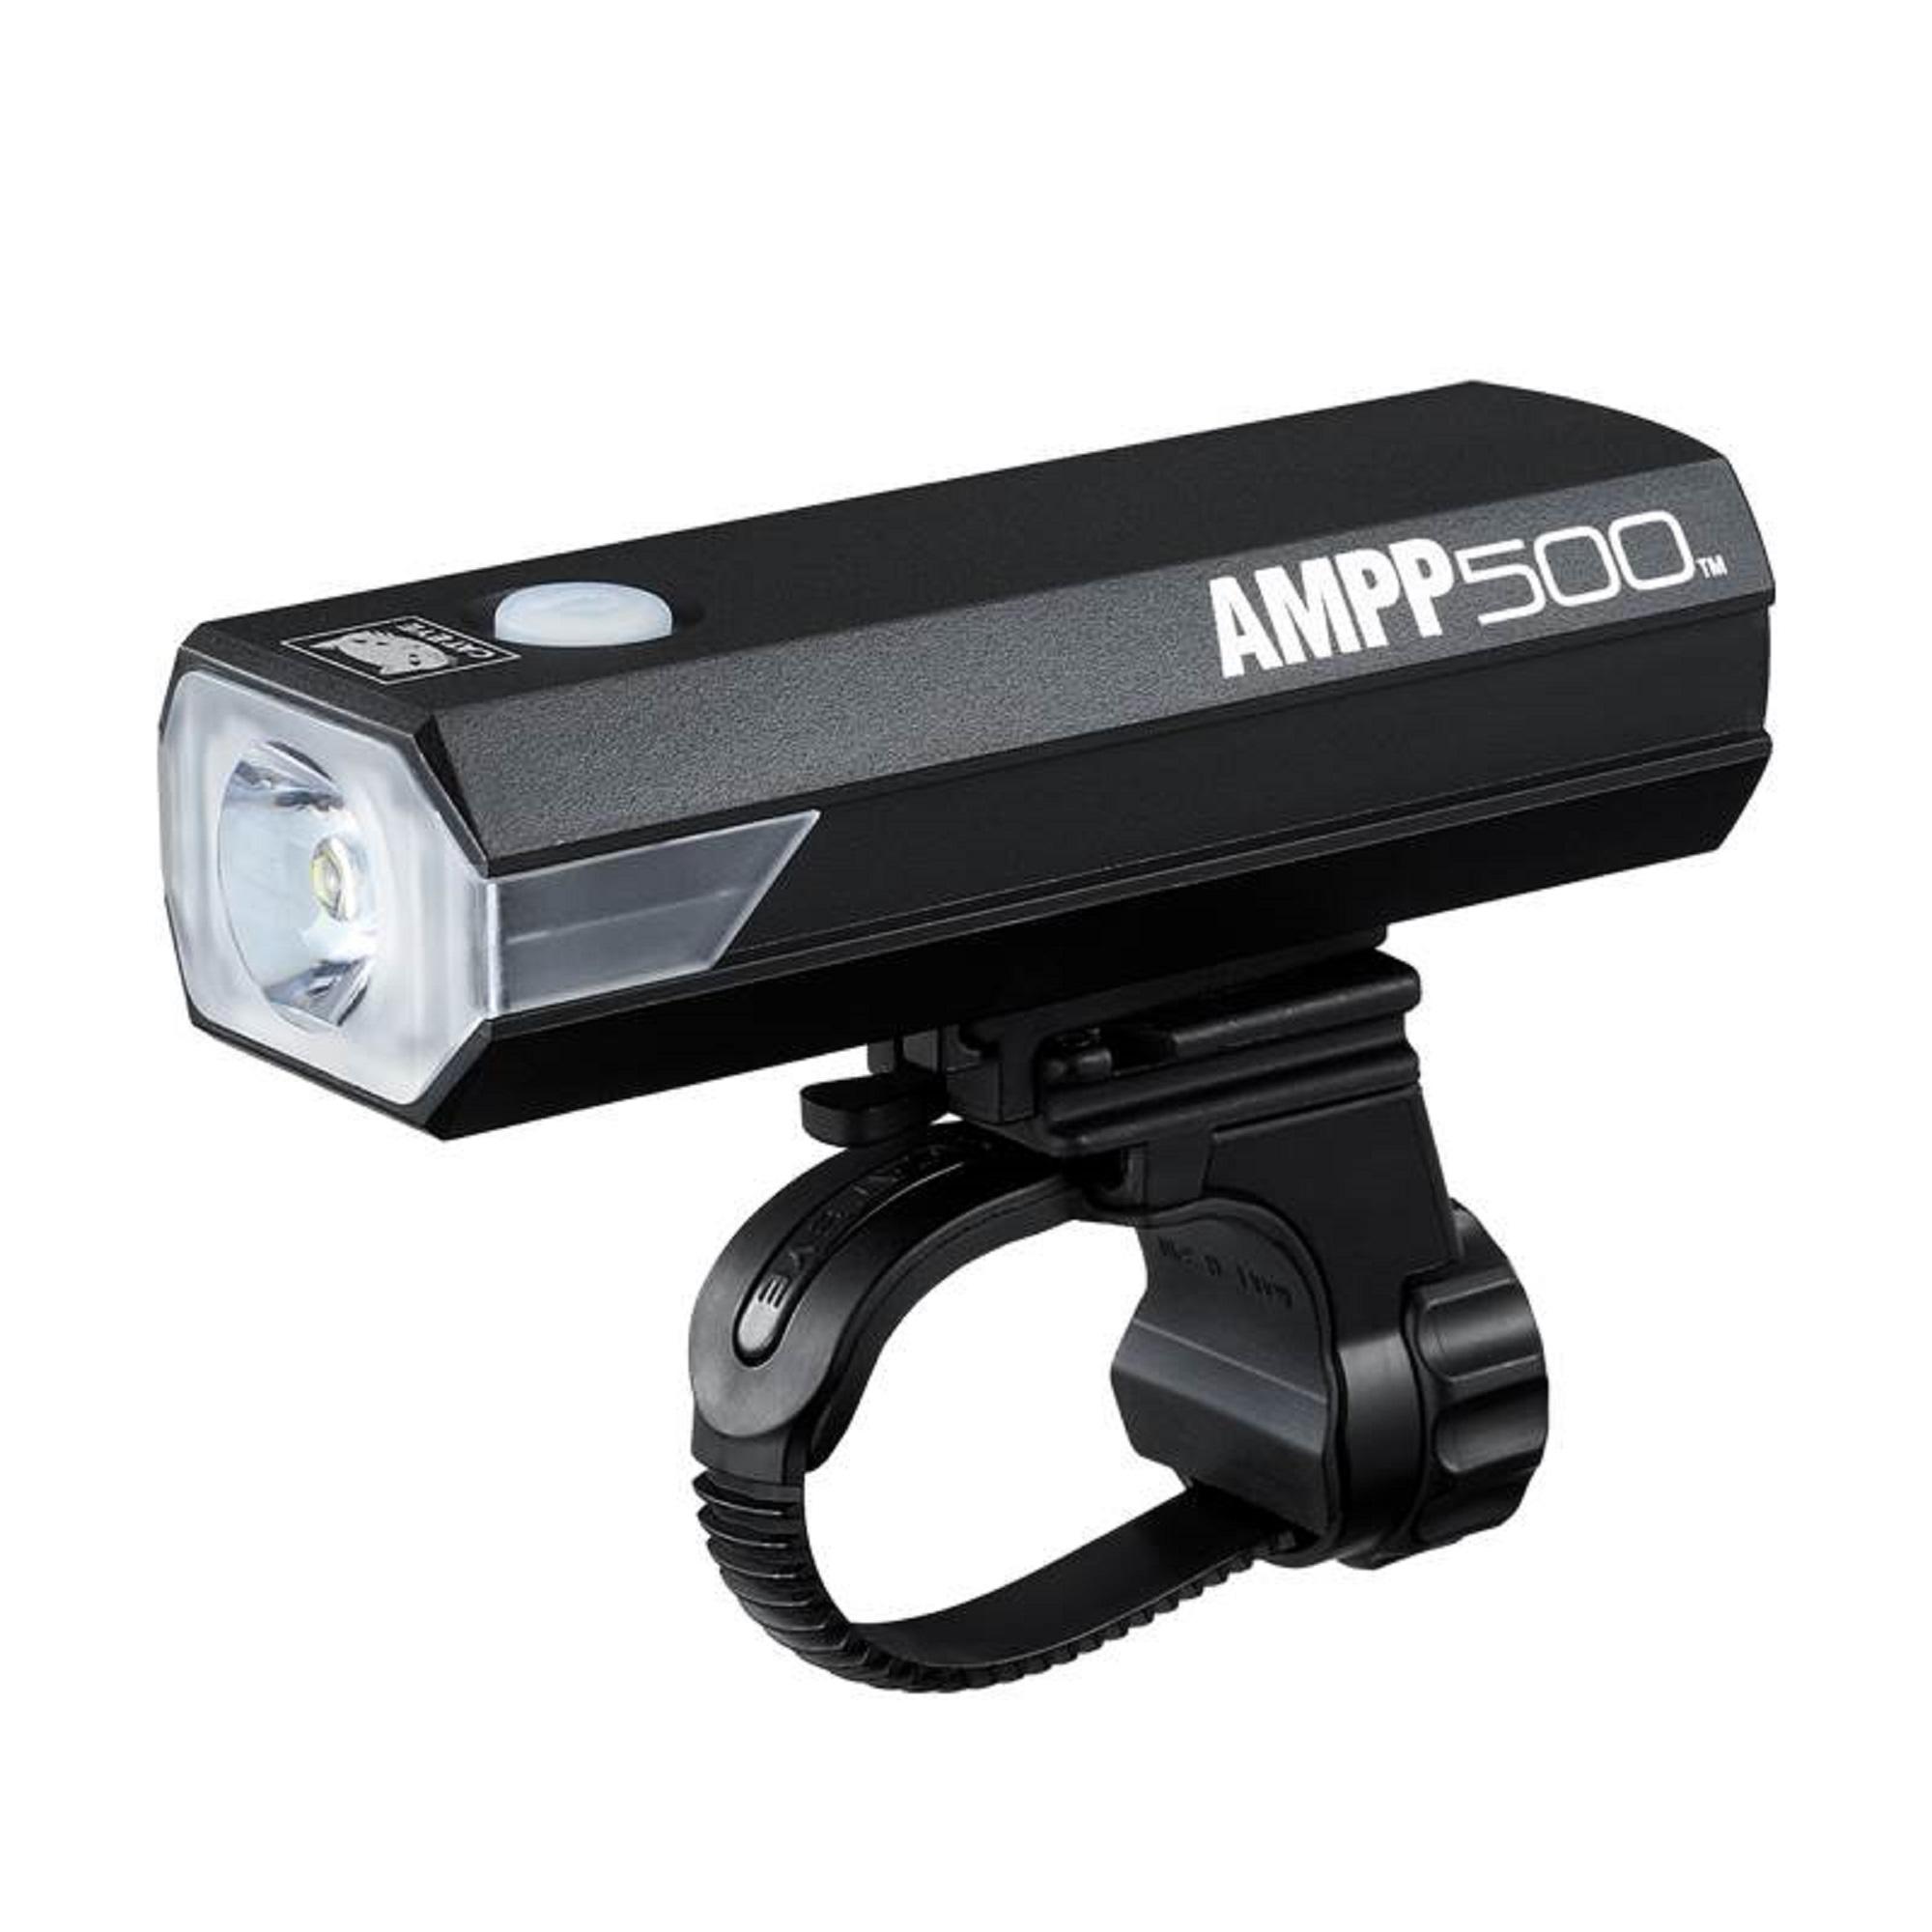 CATEYE AMPP500 USB Rechargeable Front Bike Light 500 Lumen